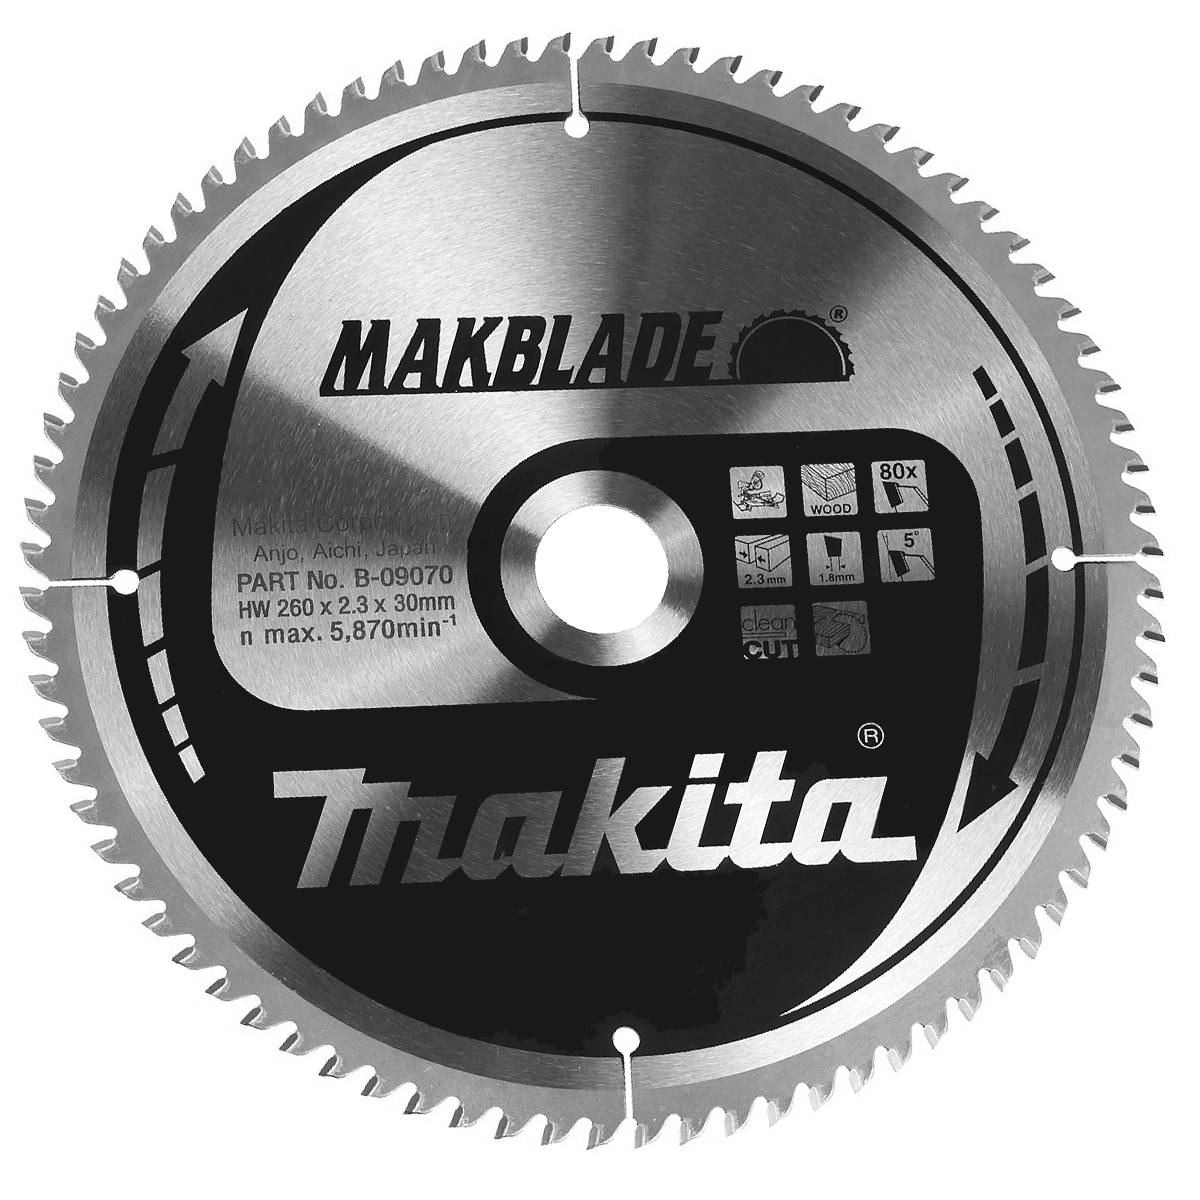 Пильный диск Makita MAKBlade 260 мм 80 зубьев (B-09070)